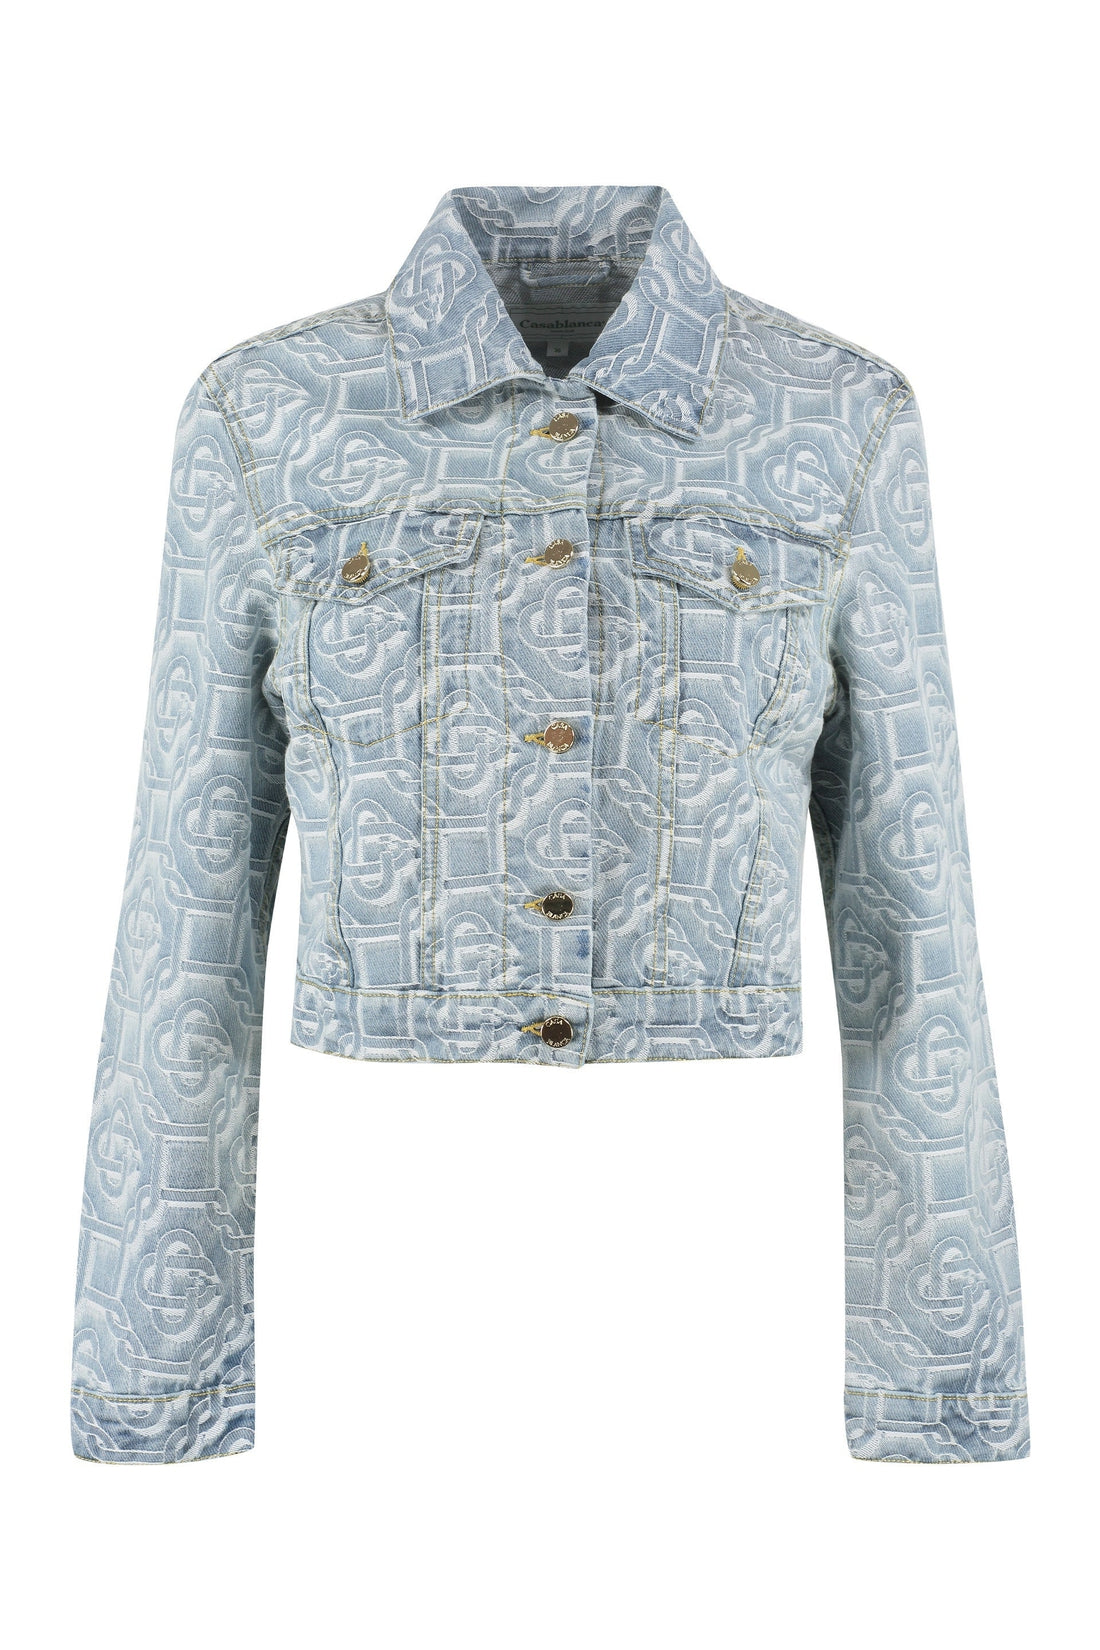 Casablanca-OUTLET-SALE-Denim jacket-ARCHIVIST